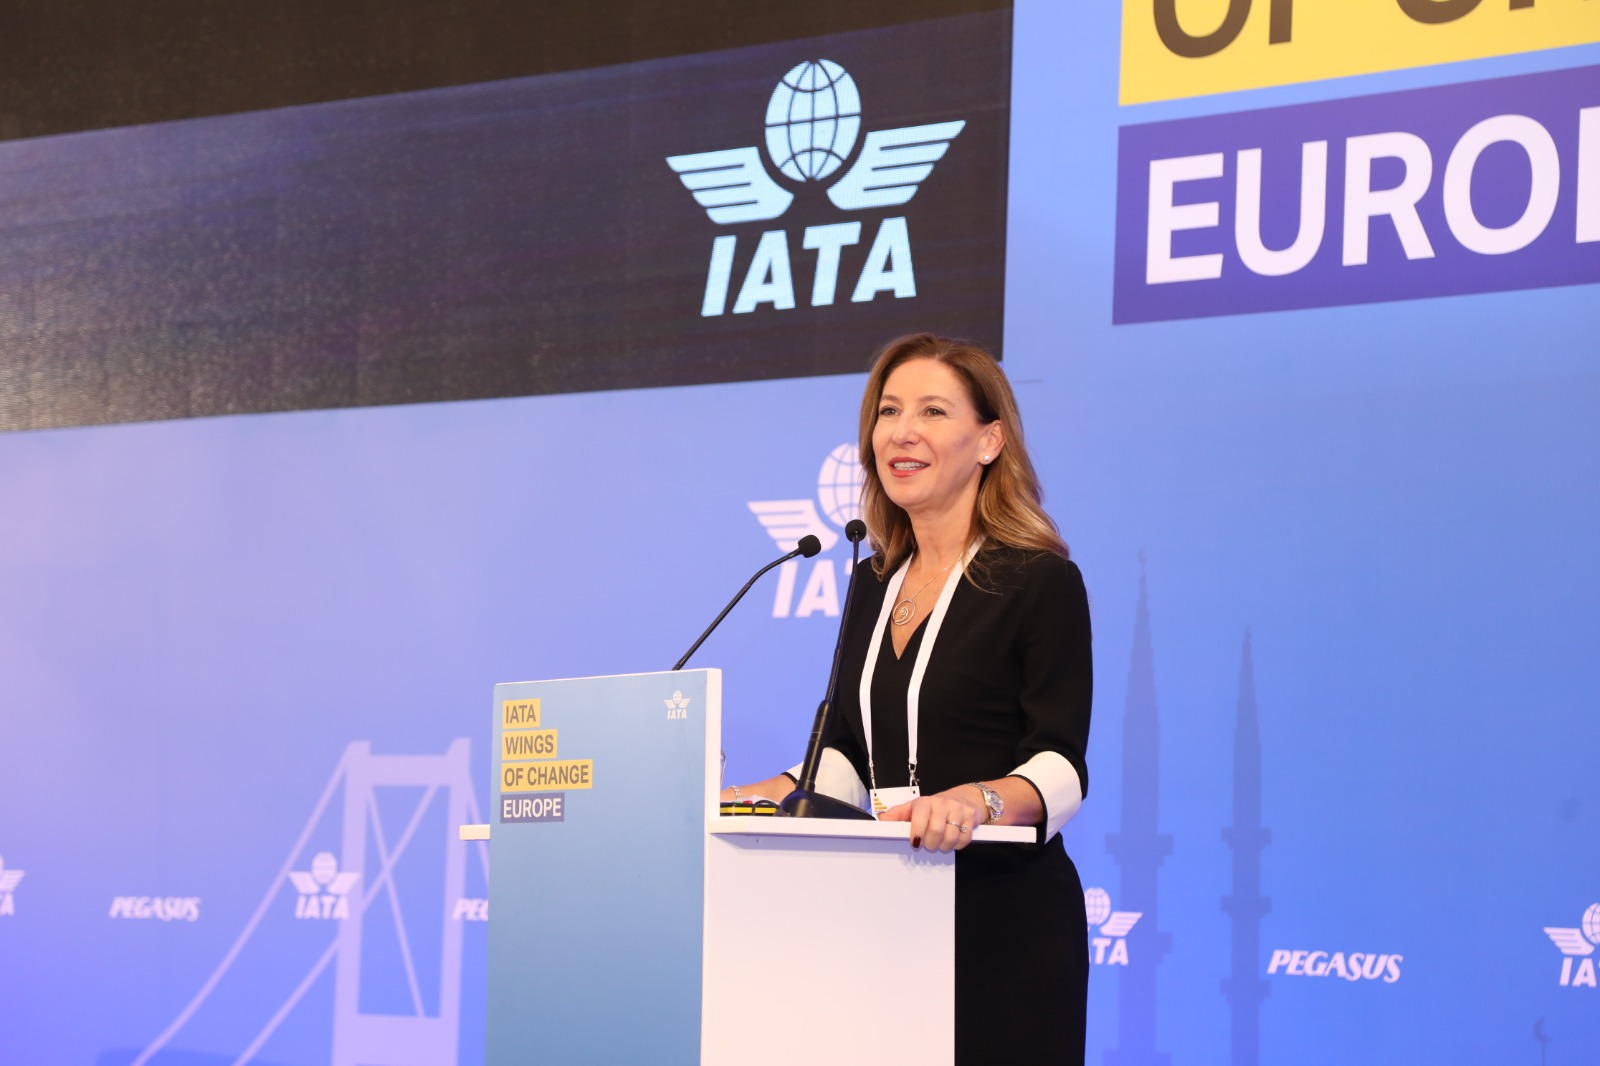 IATA Wings of Change Europe,Pegasus Hava Yolları ev sahipliğinde İstanbul’da başladı